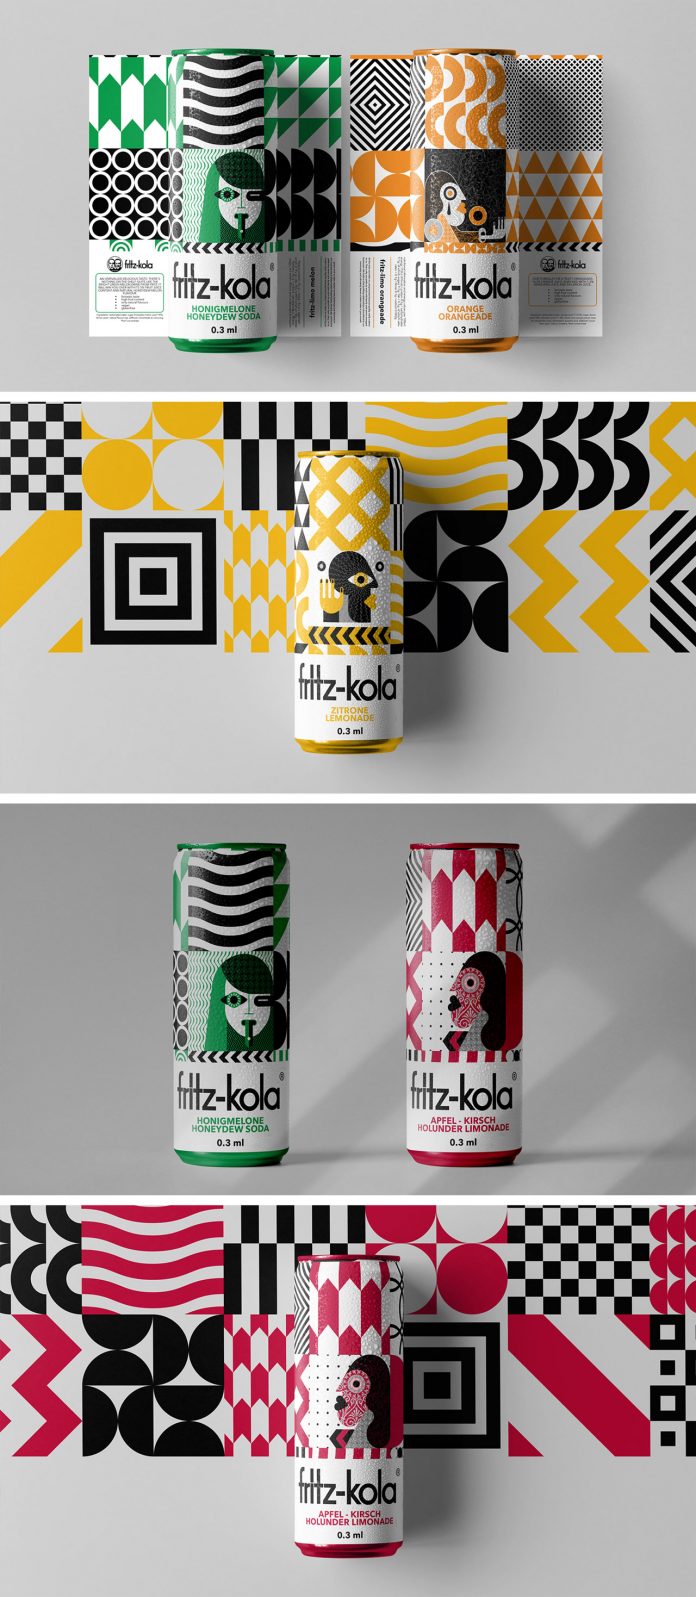 Fritz-Kola packaging design concept by Vinille Büro.